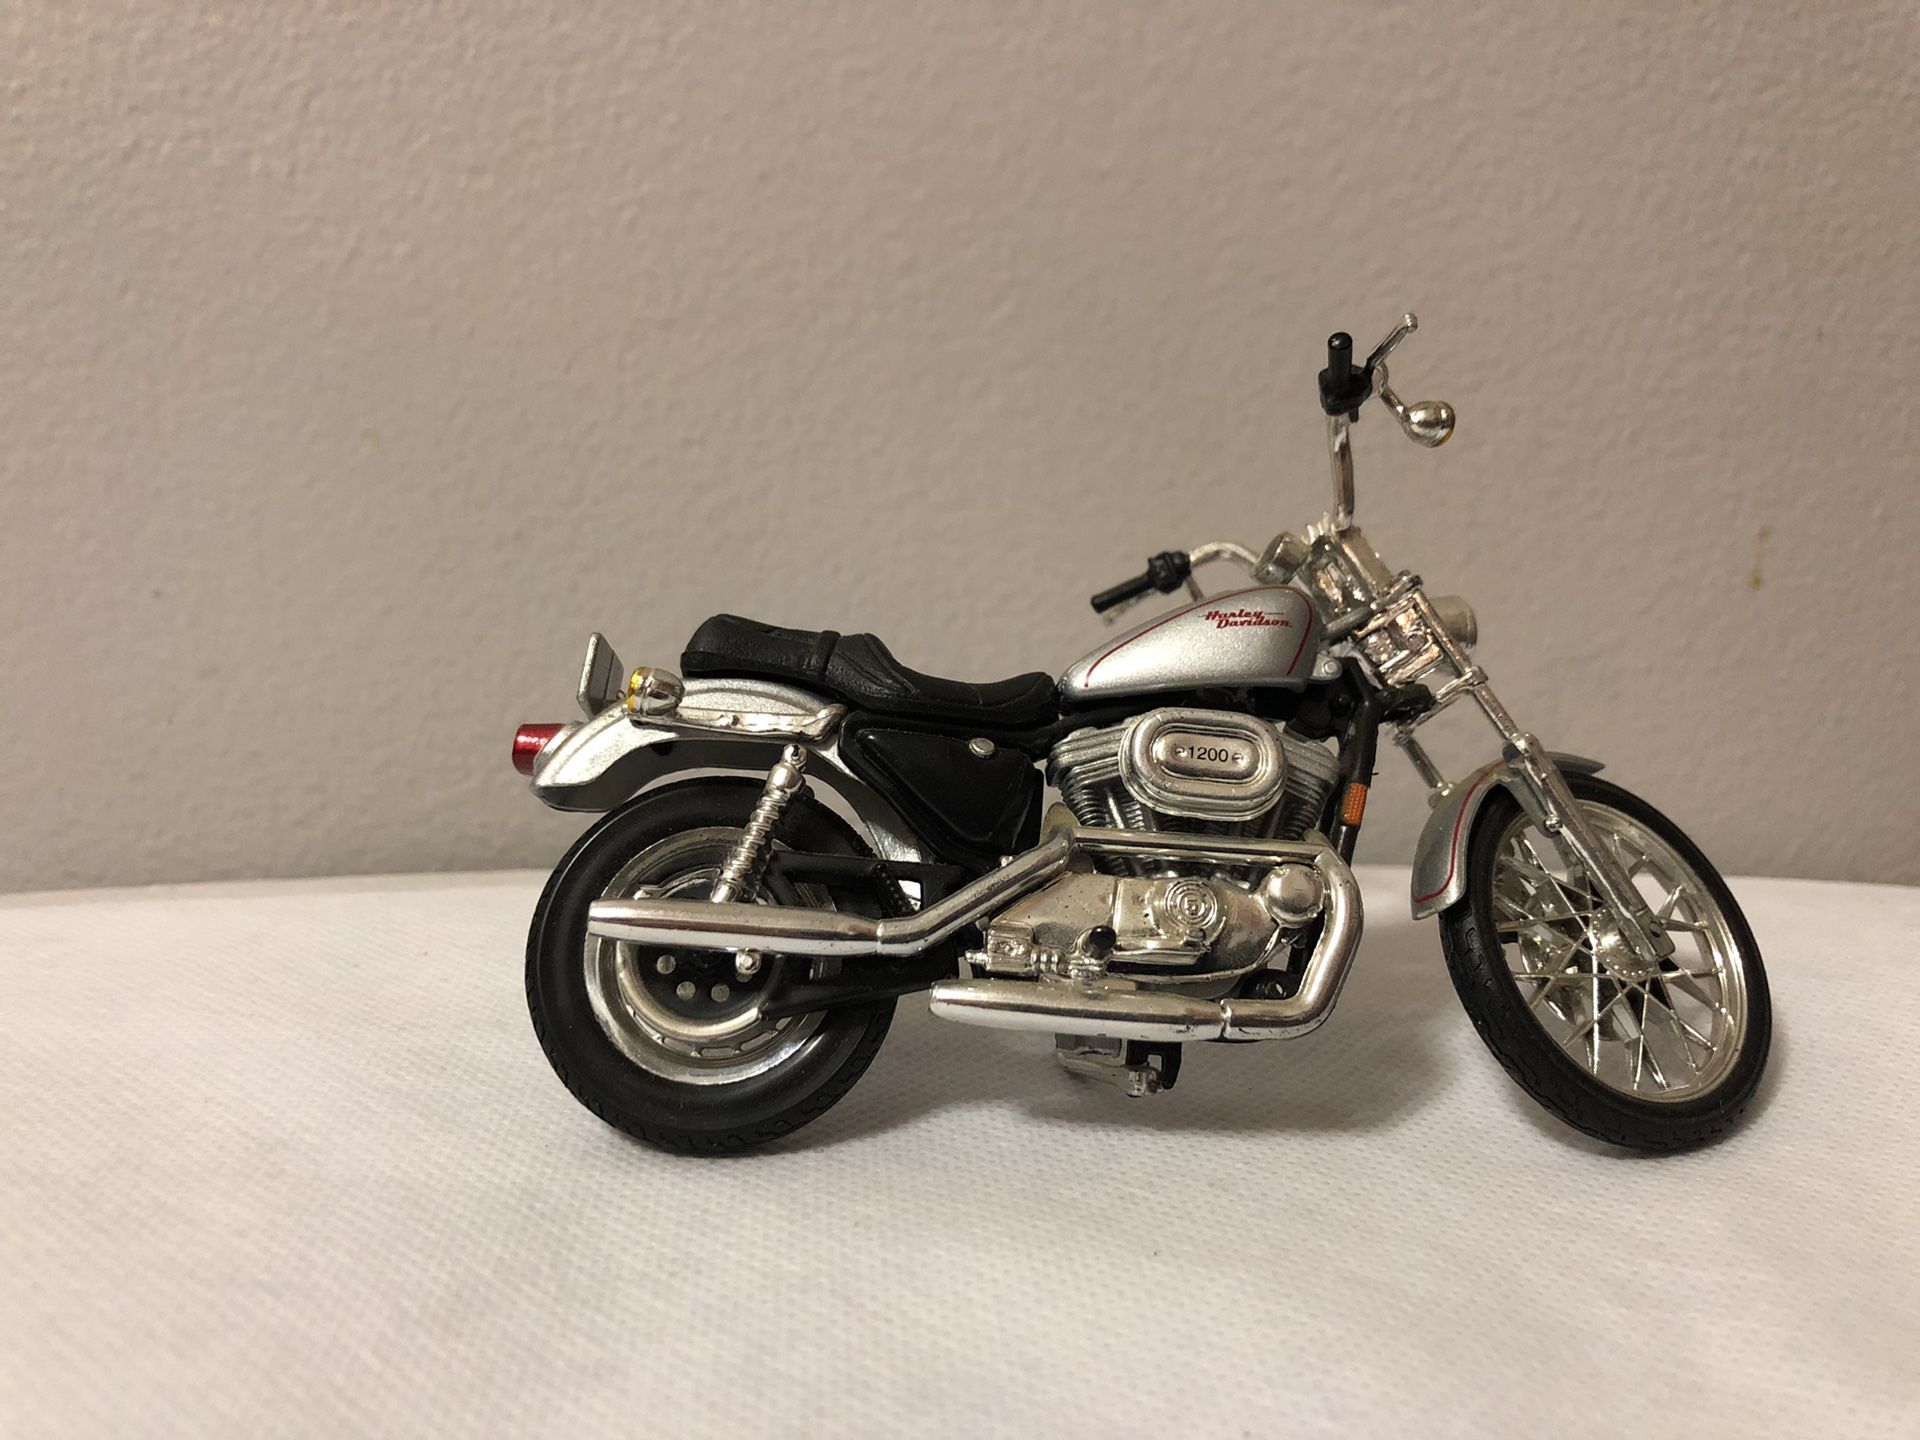 Harley Davidson toy bikes